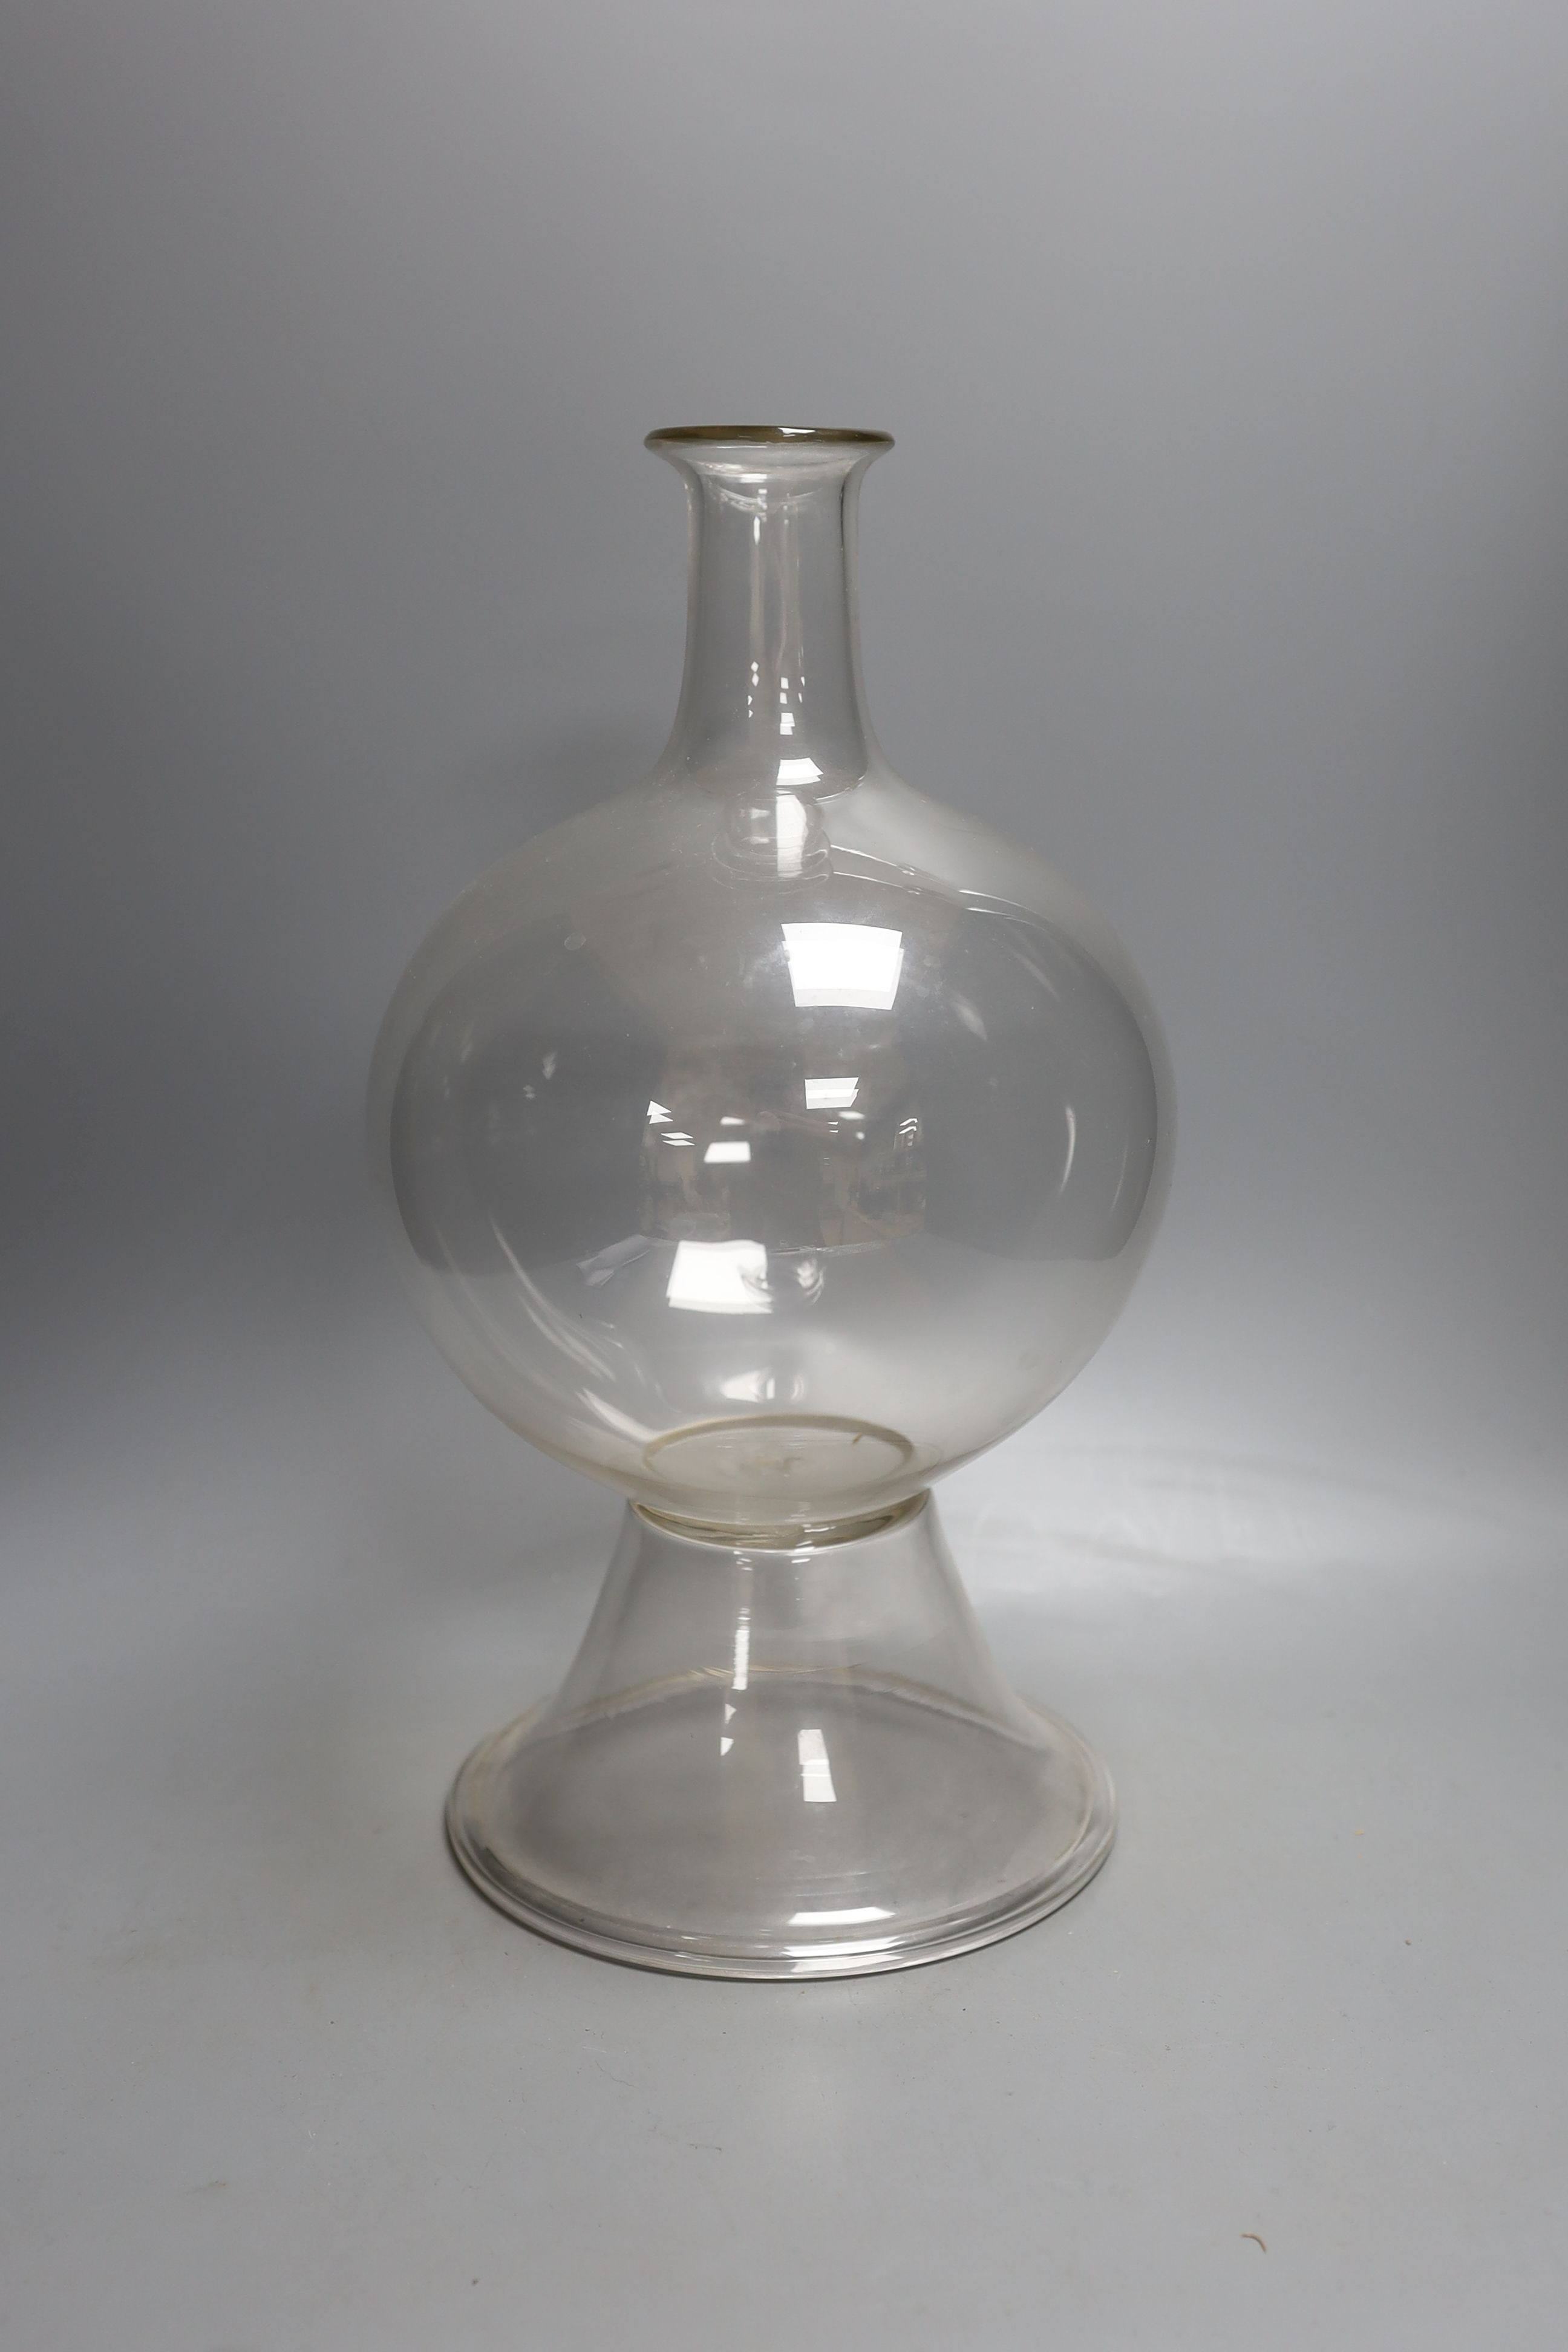 A glass lace-maker's lamp 36cm